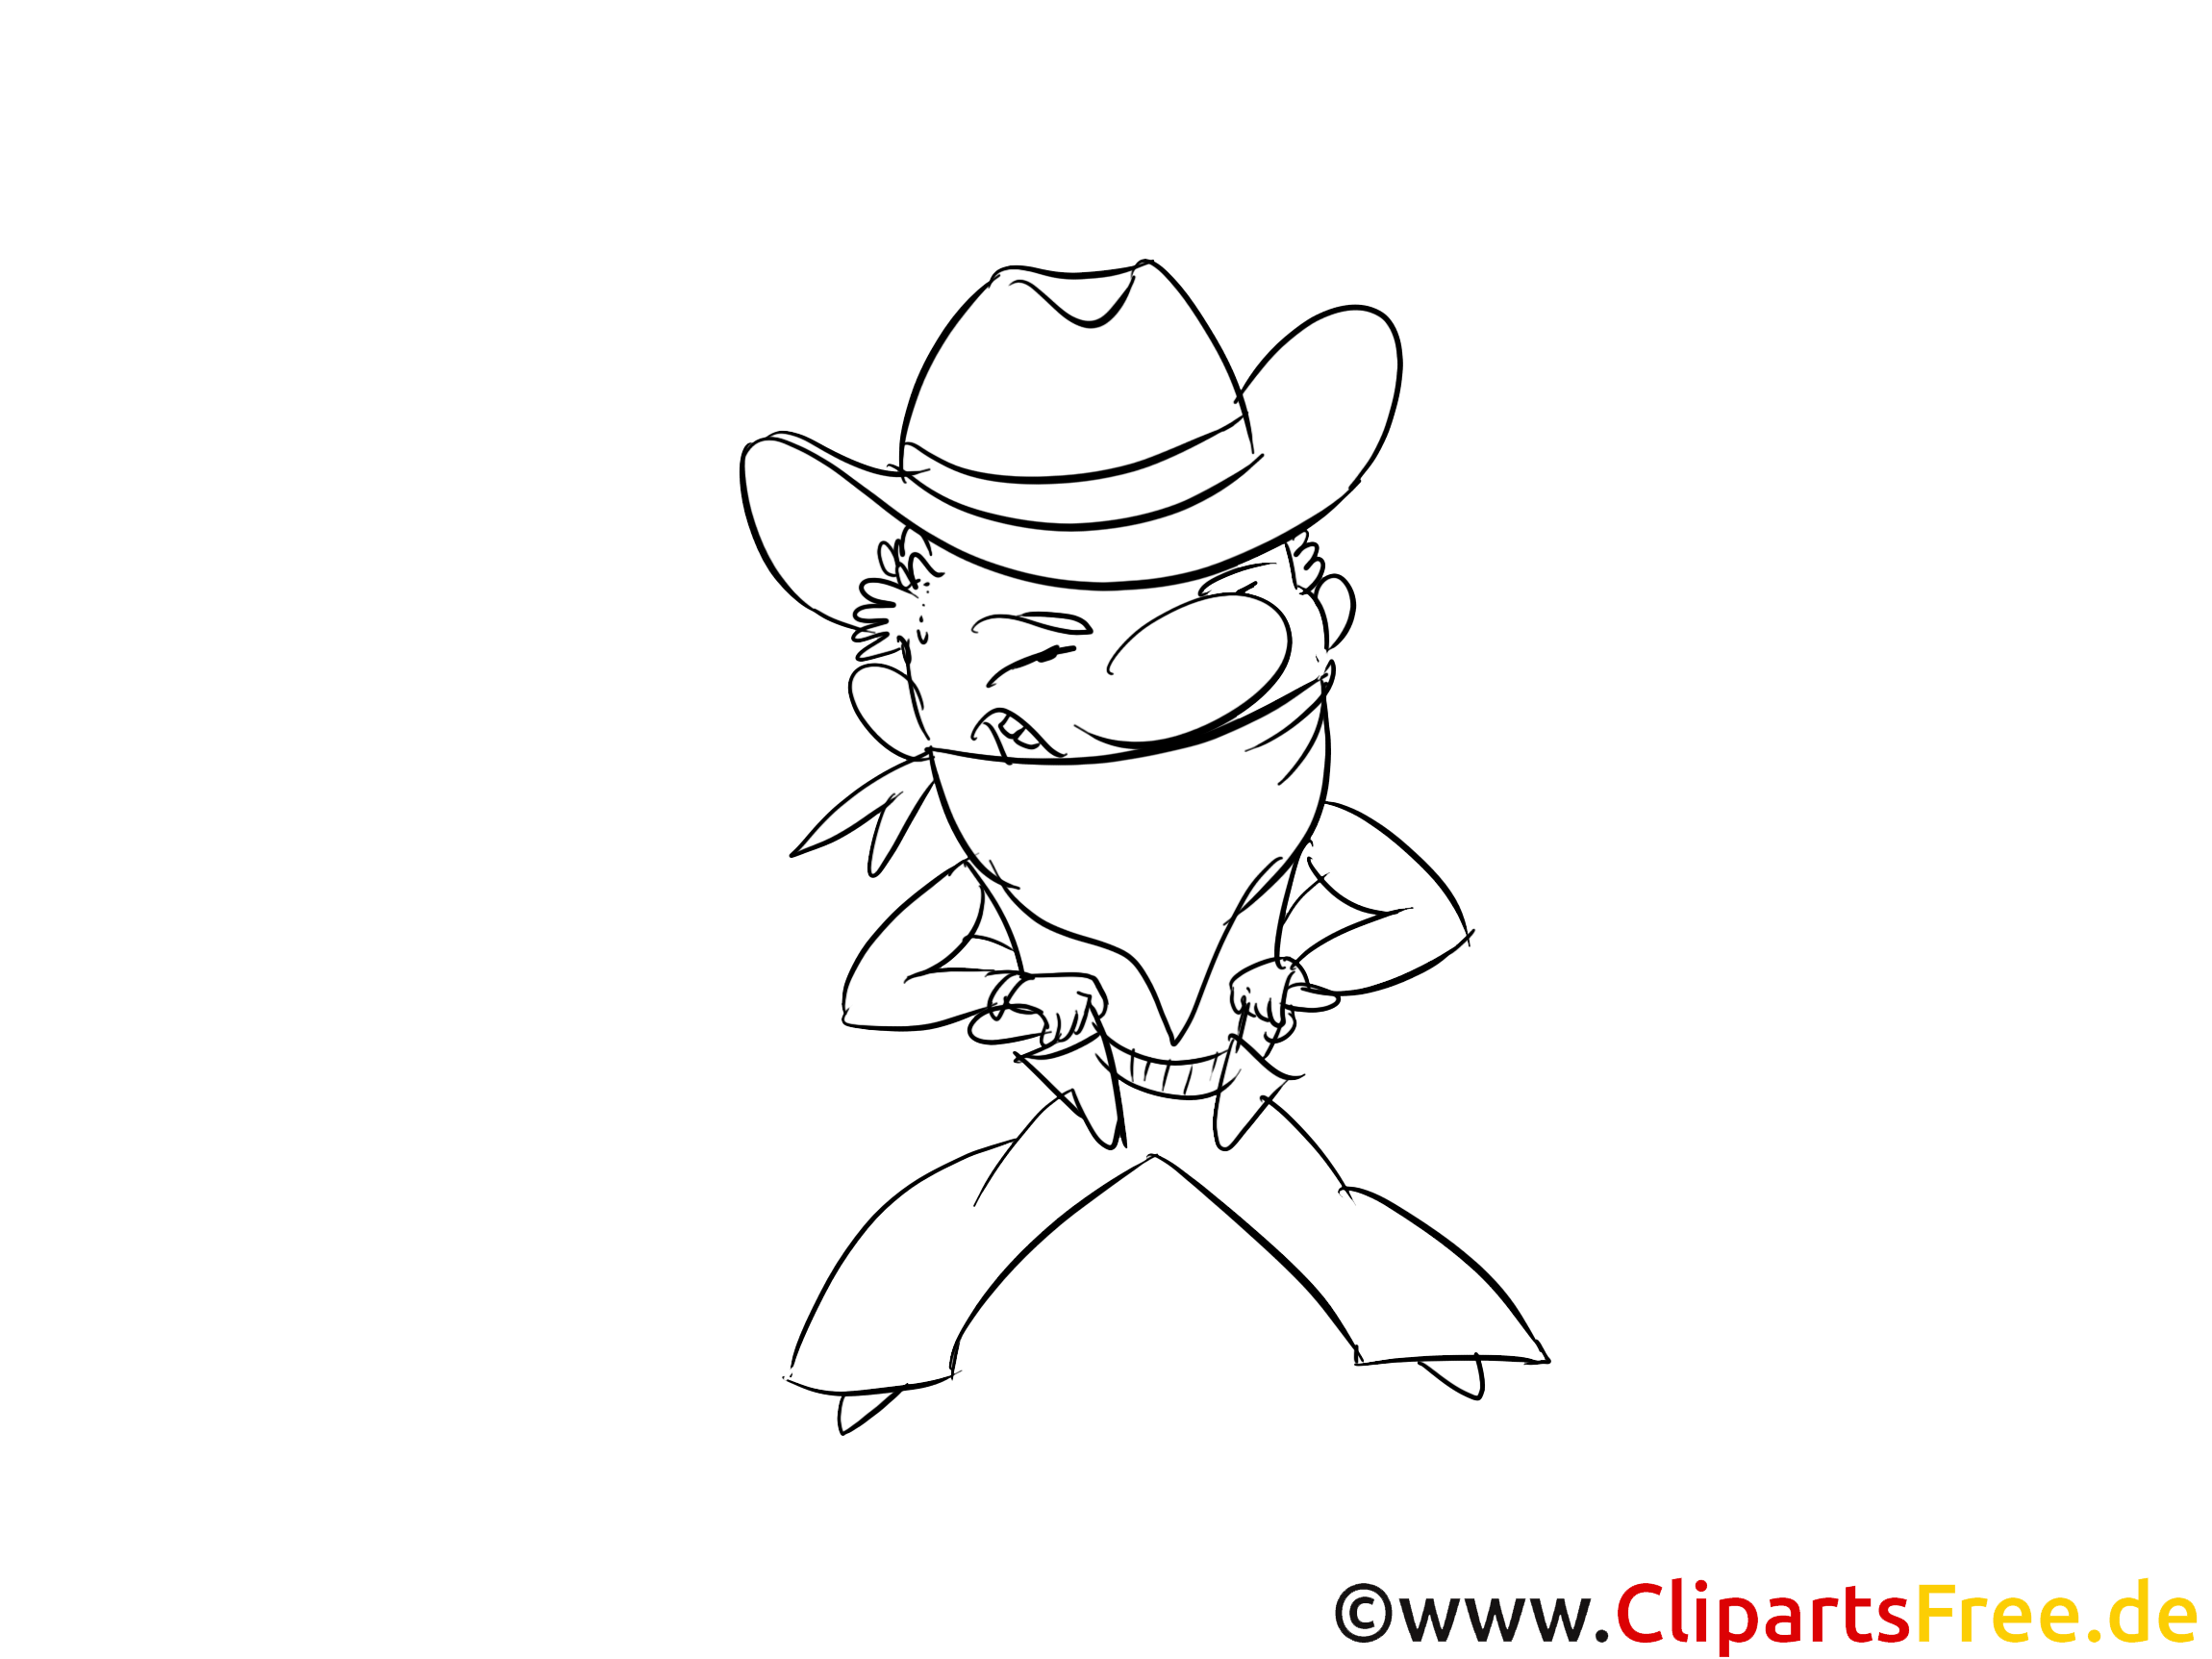 Cowboy dessin – Cartoons gratuits à imprimer